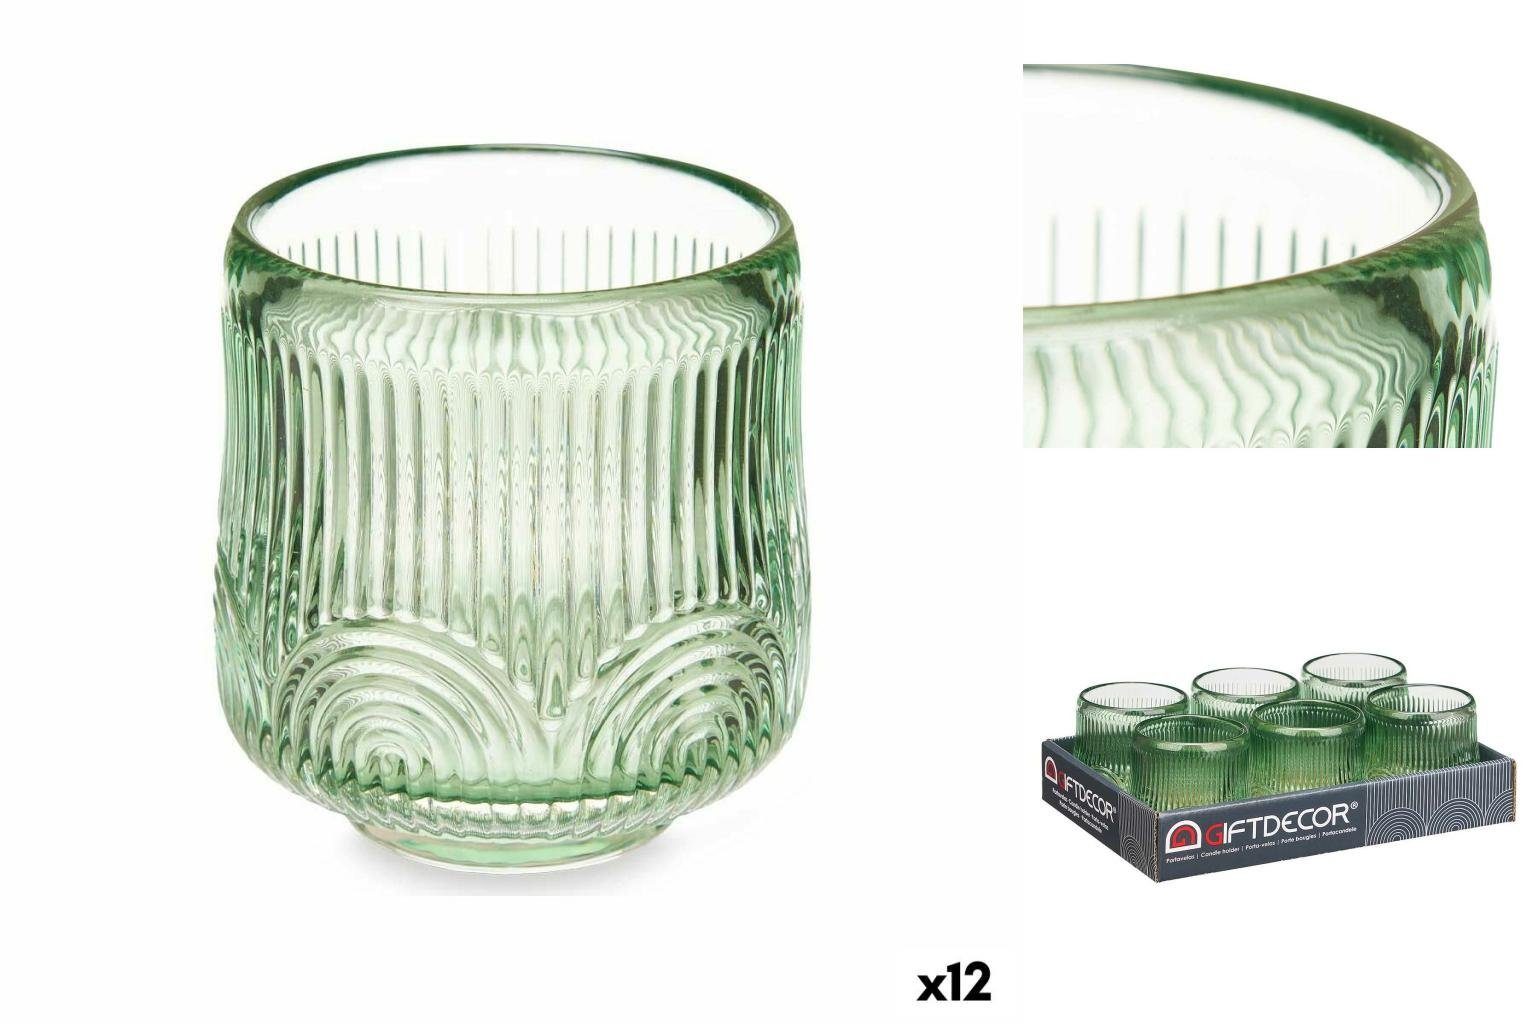 Stück Kerzenschale x 12 Windlicht 7,8 Gift Decor grün x cm 7,5 7,5 Glas Streifen